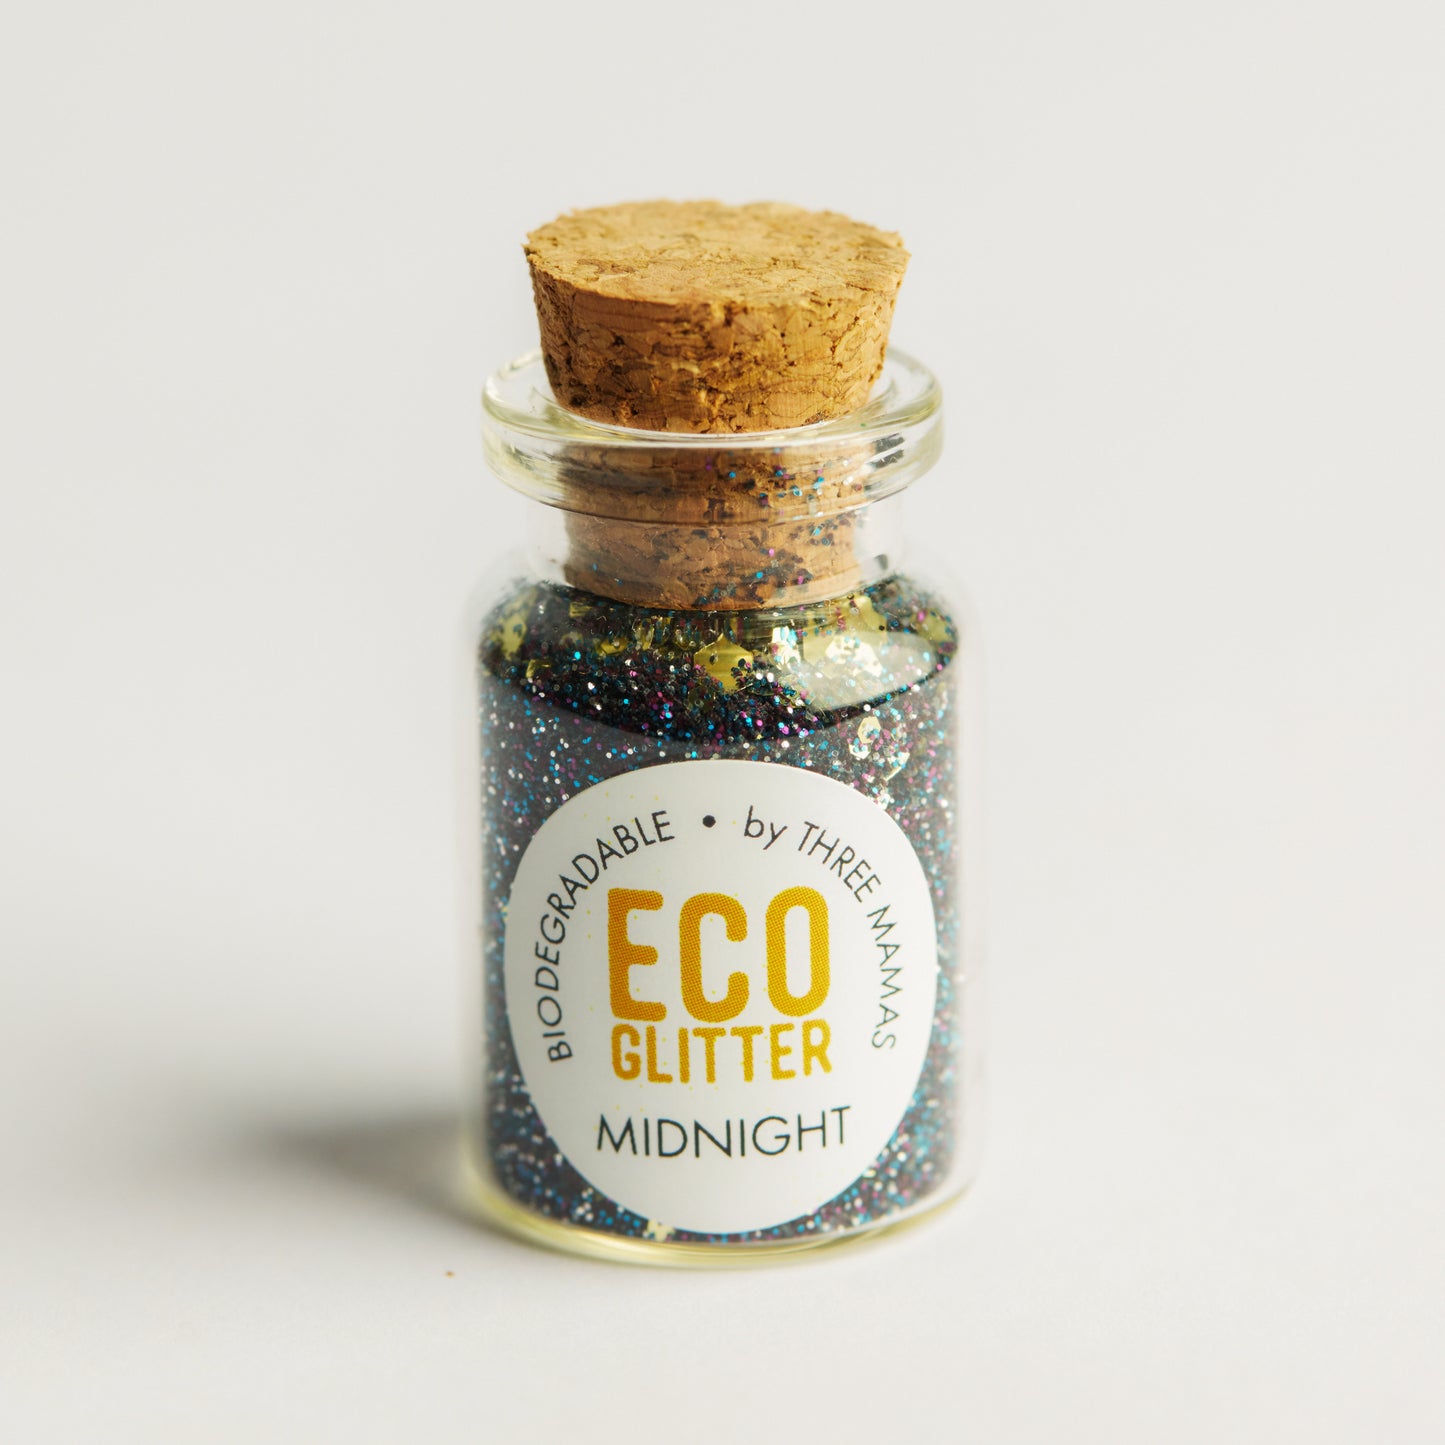 Eco Glitter Jars